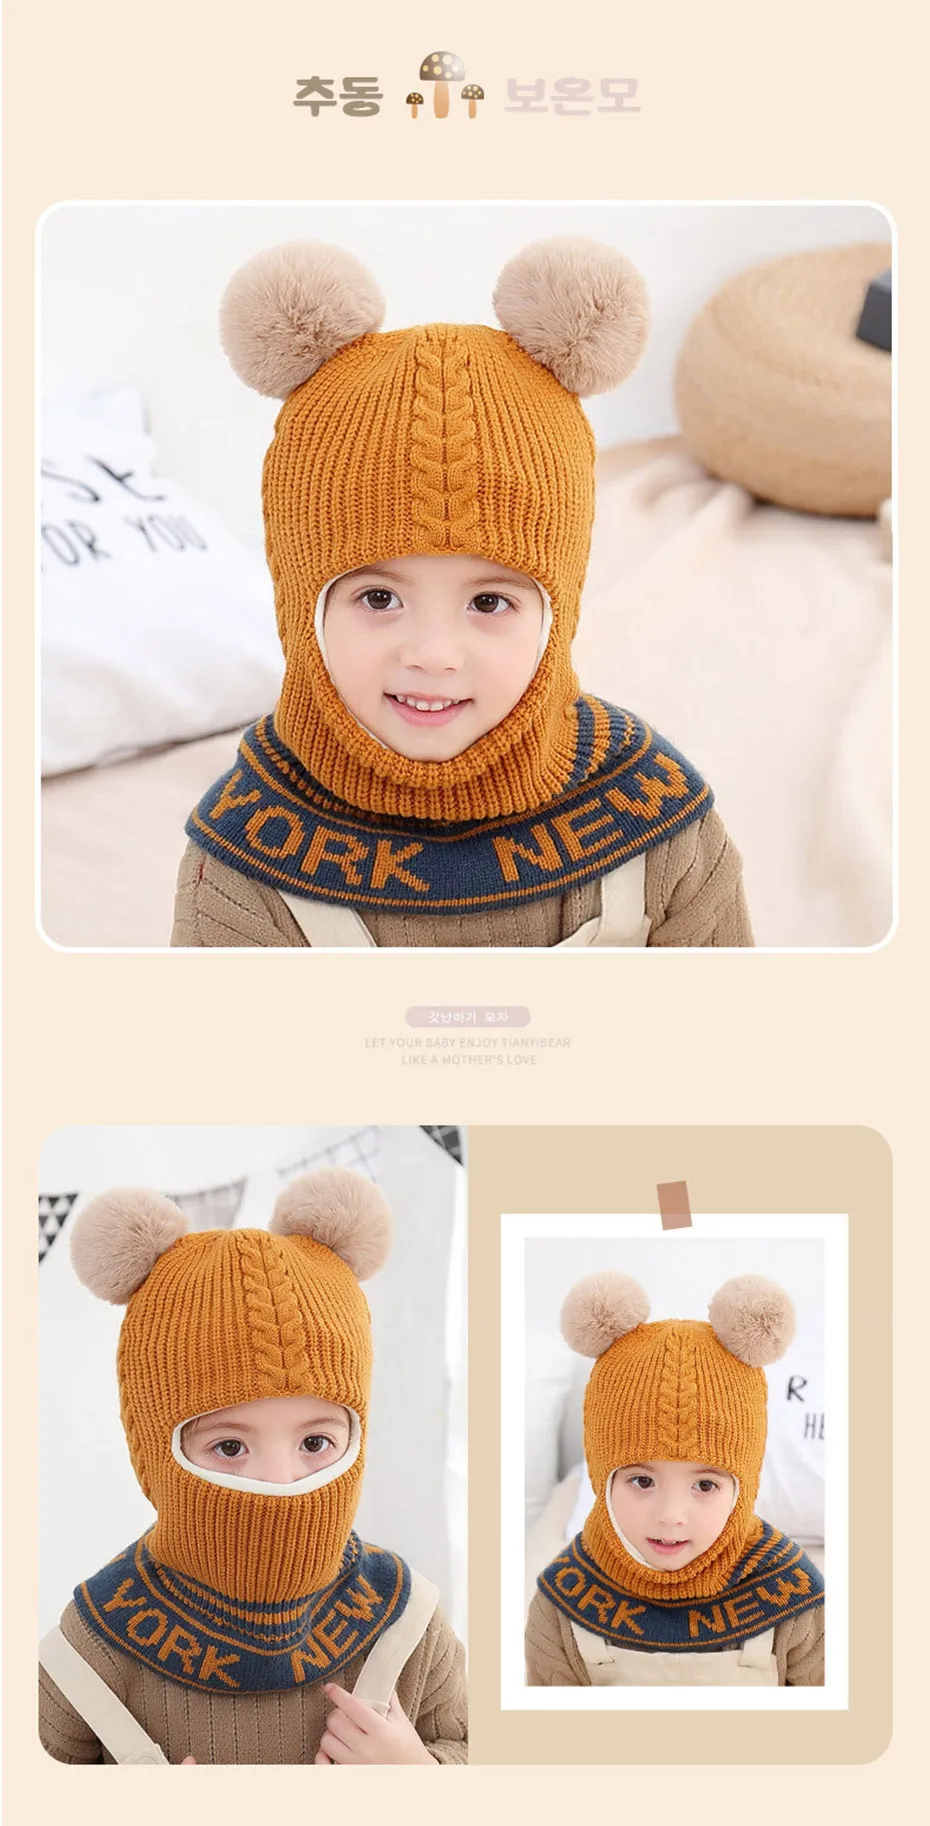 Зимняя детская шапочка с помпоном для девочки и шапка для маленьких мальчиков шарф маска HT19029